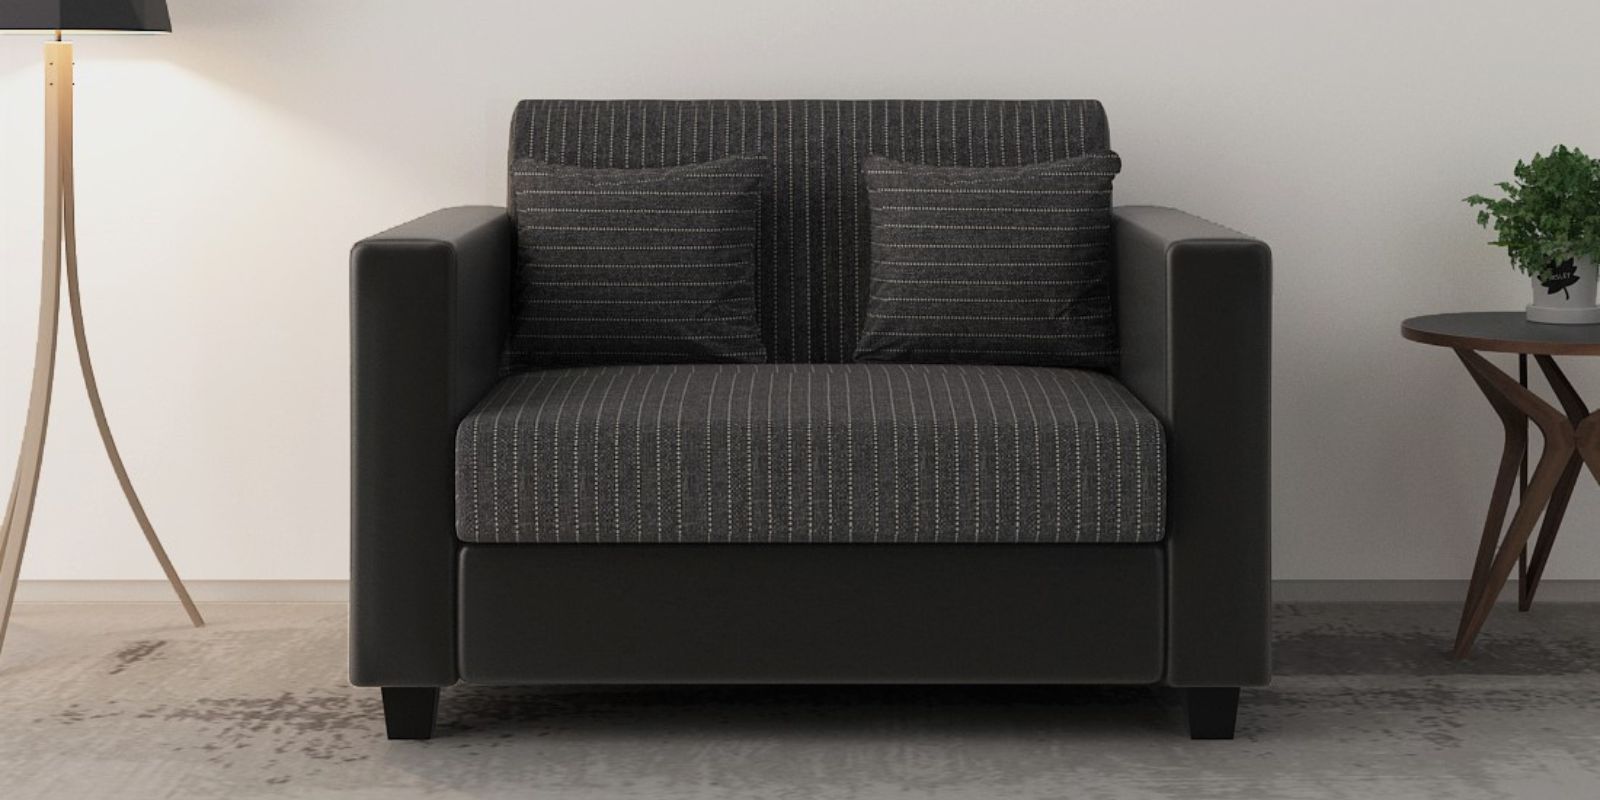 Baley Fabric 2 Seater Sofa in Lama Black Colour